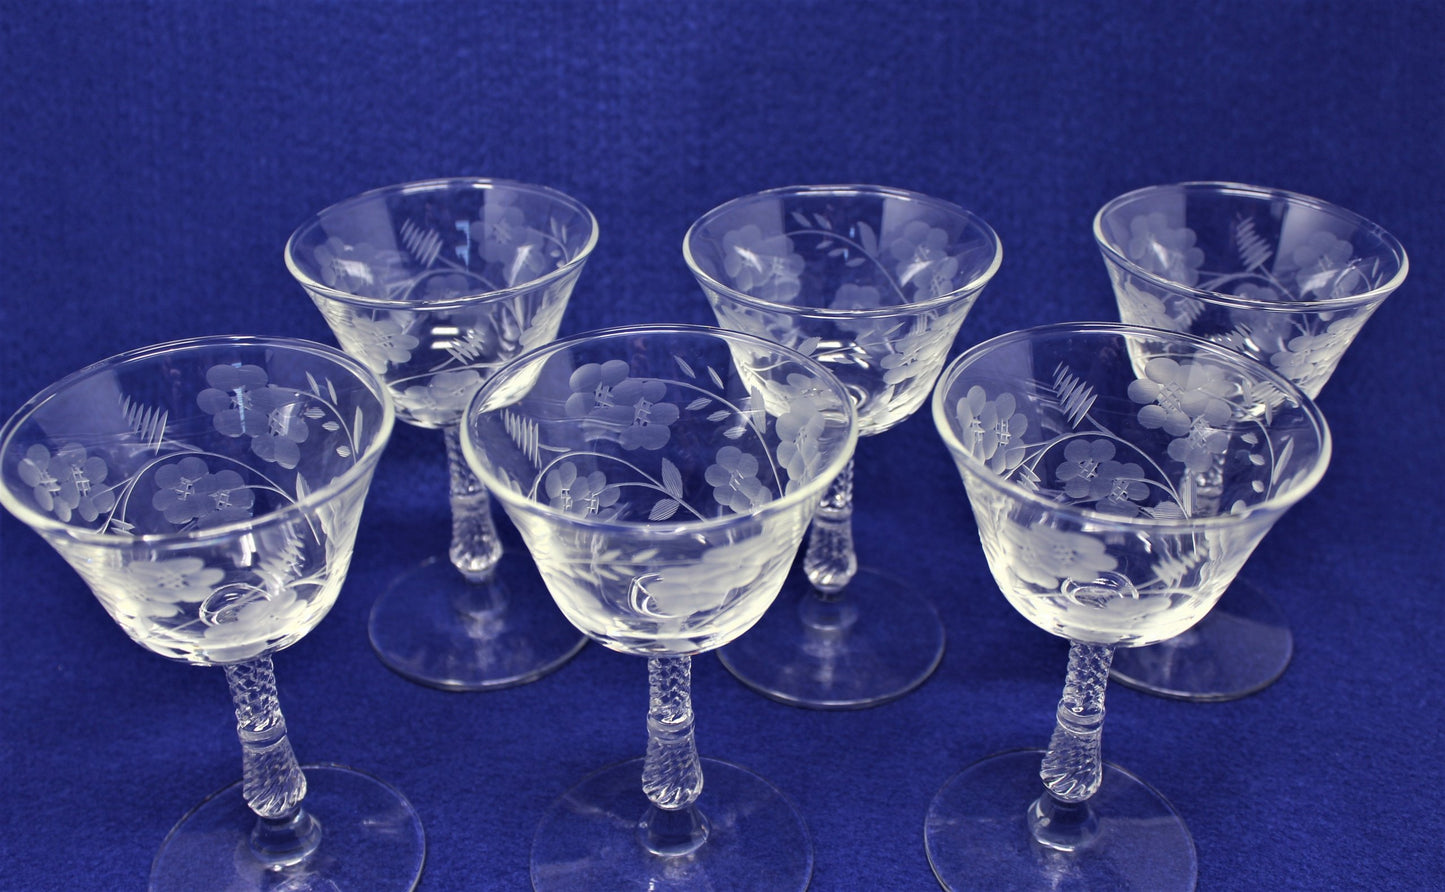 Cocktail / Liquor Glasses, Rock Sharpe Crystal, Blossom, Set of 6, Vintage